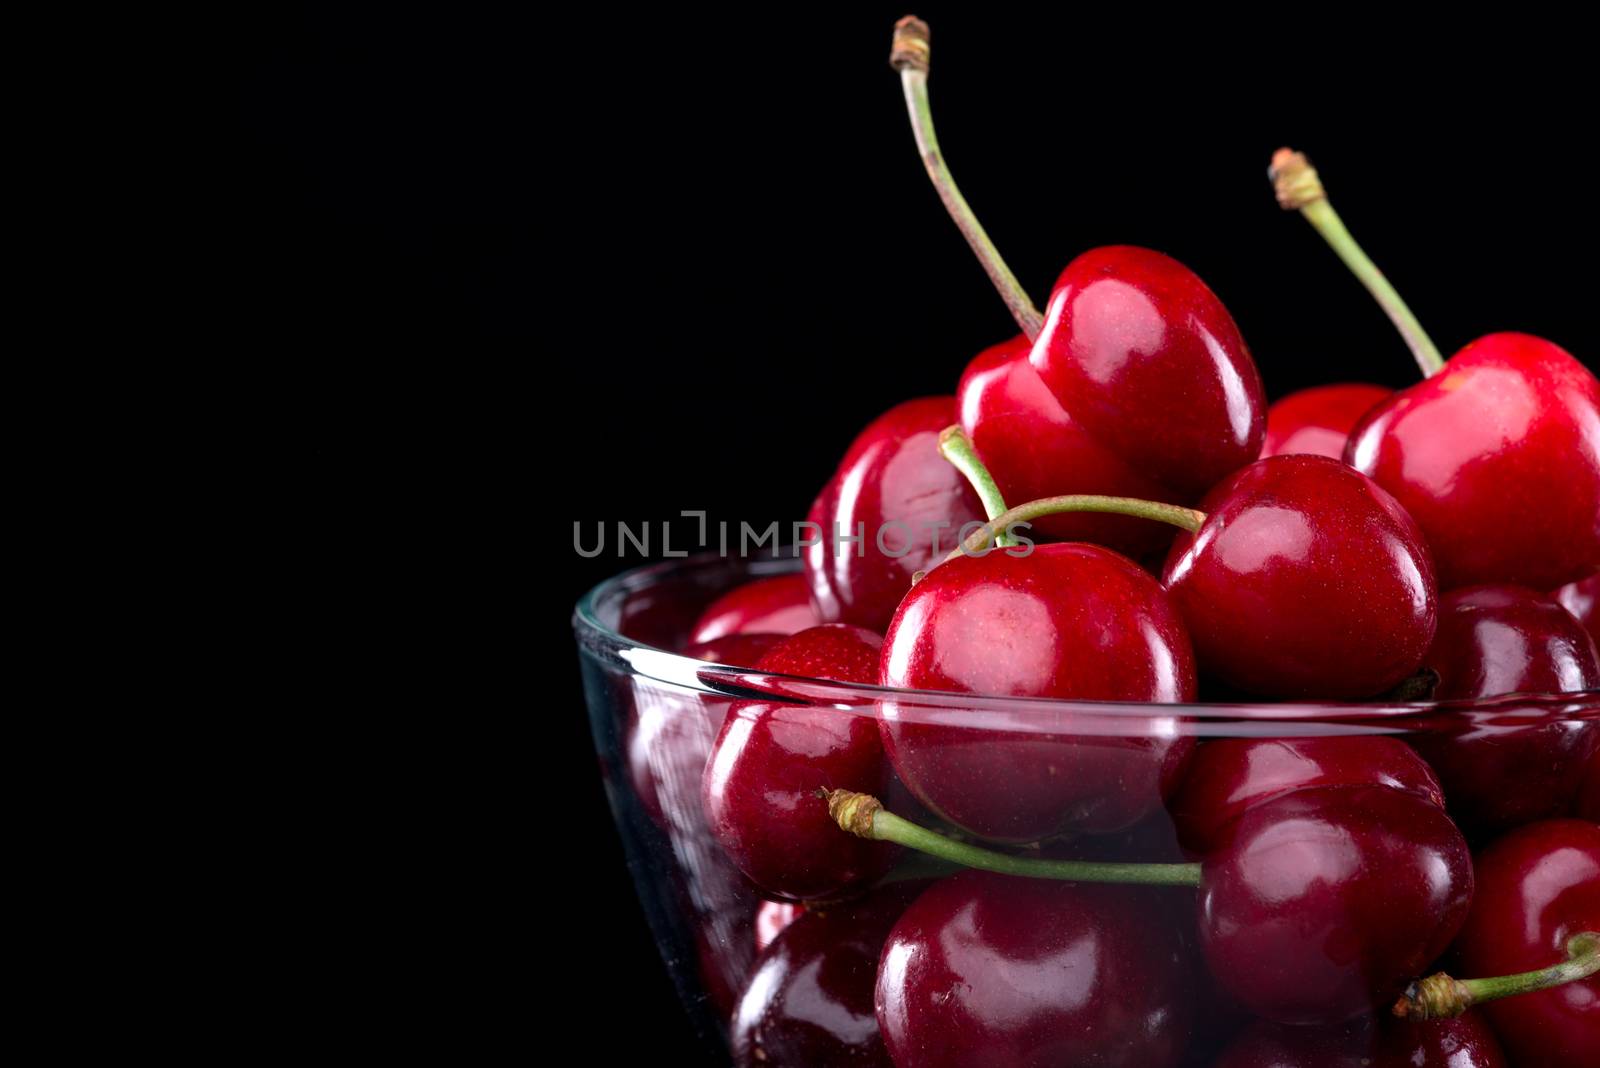 Juicy cherries in a bowl by stokkete